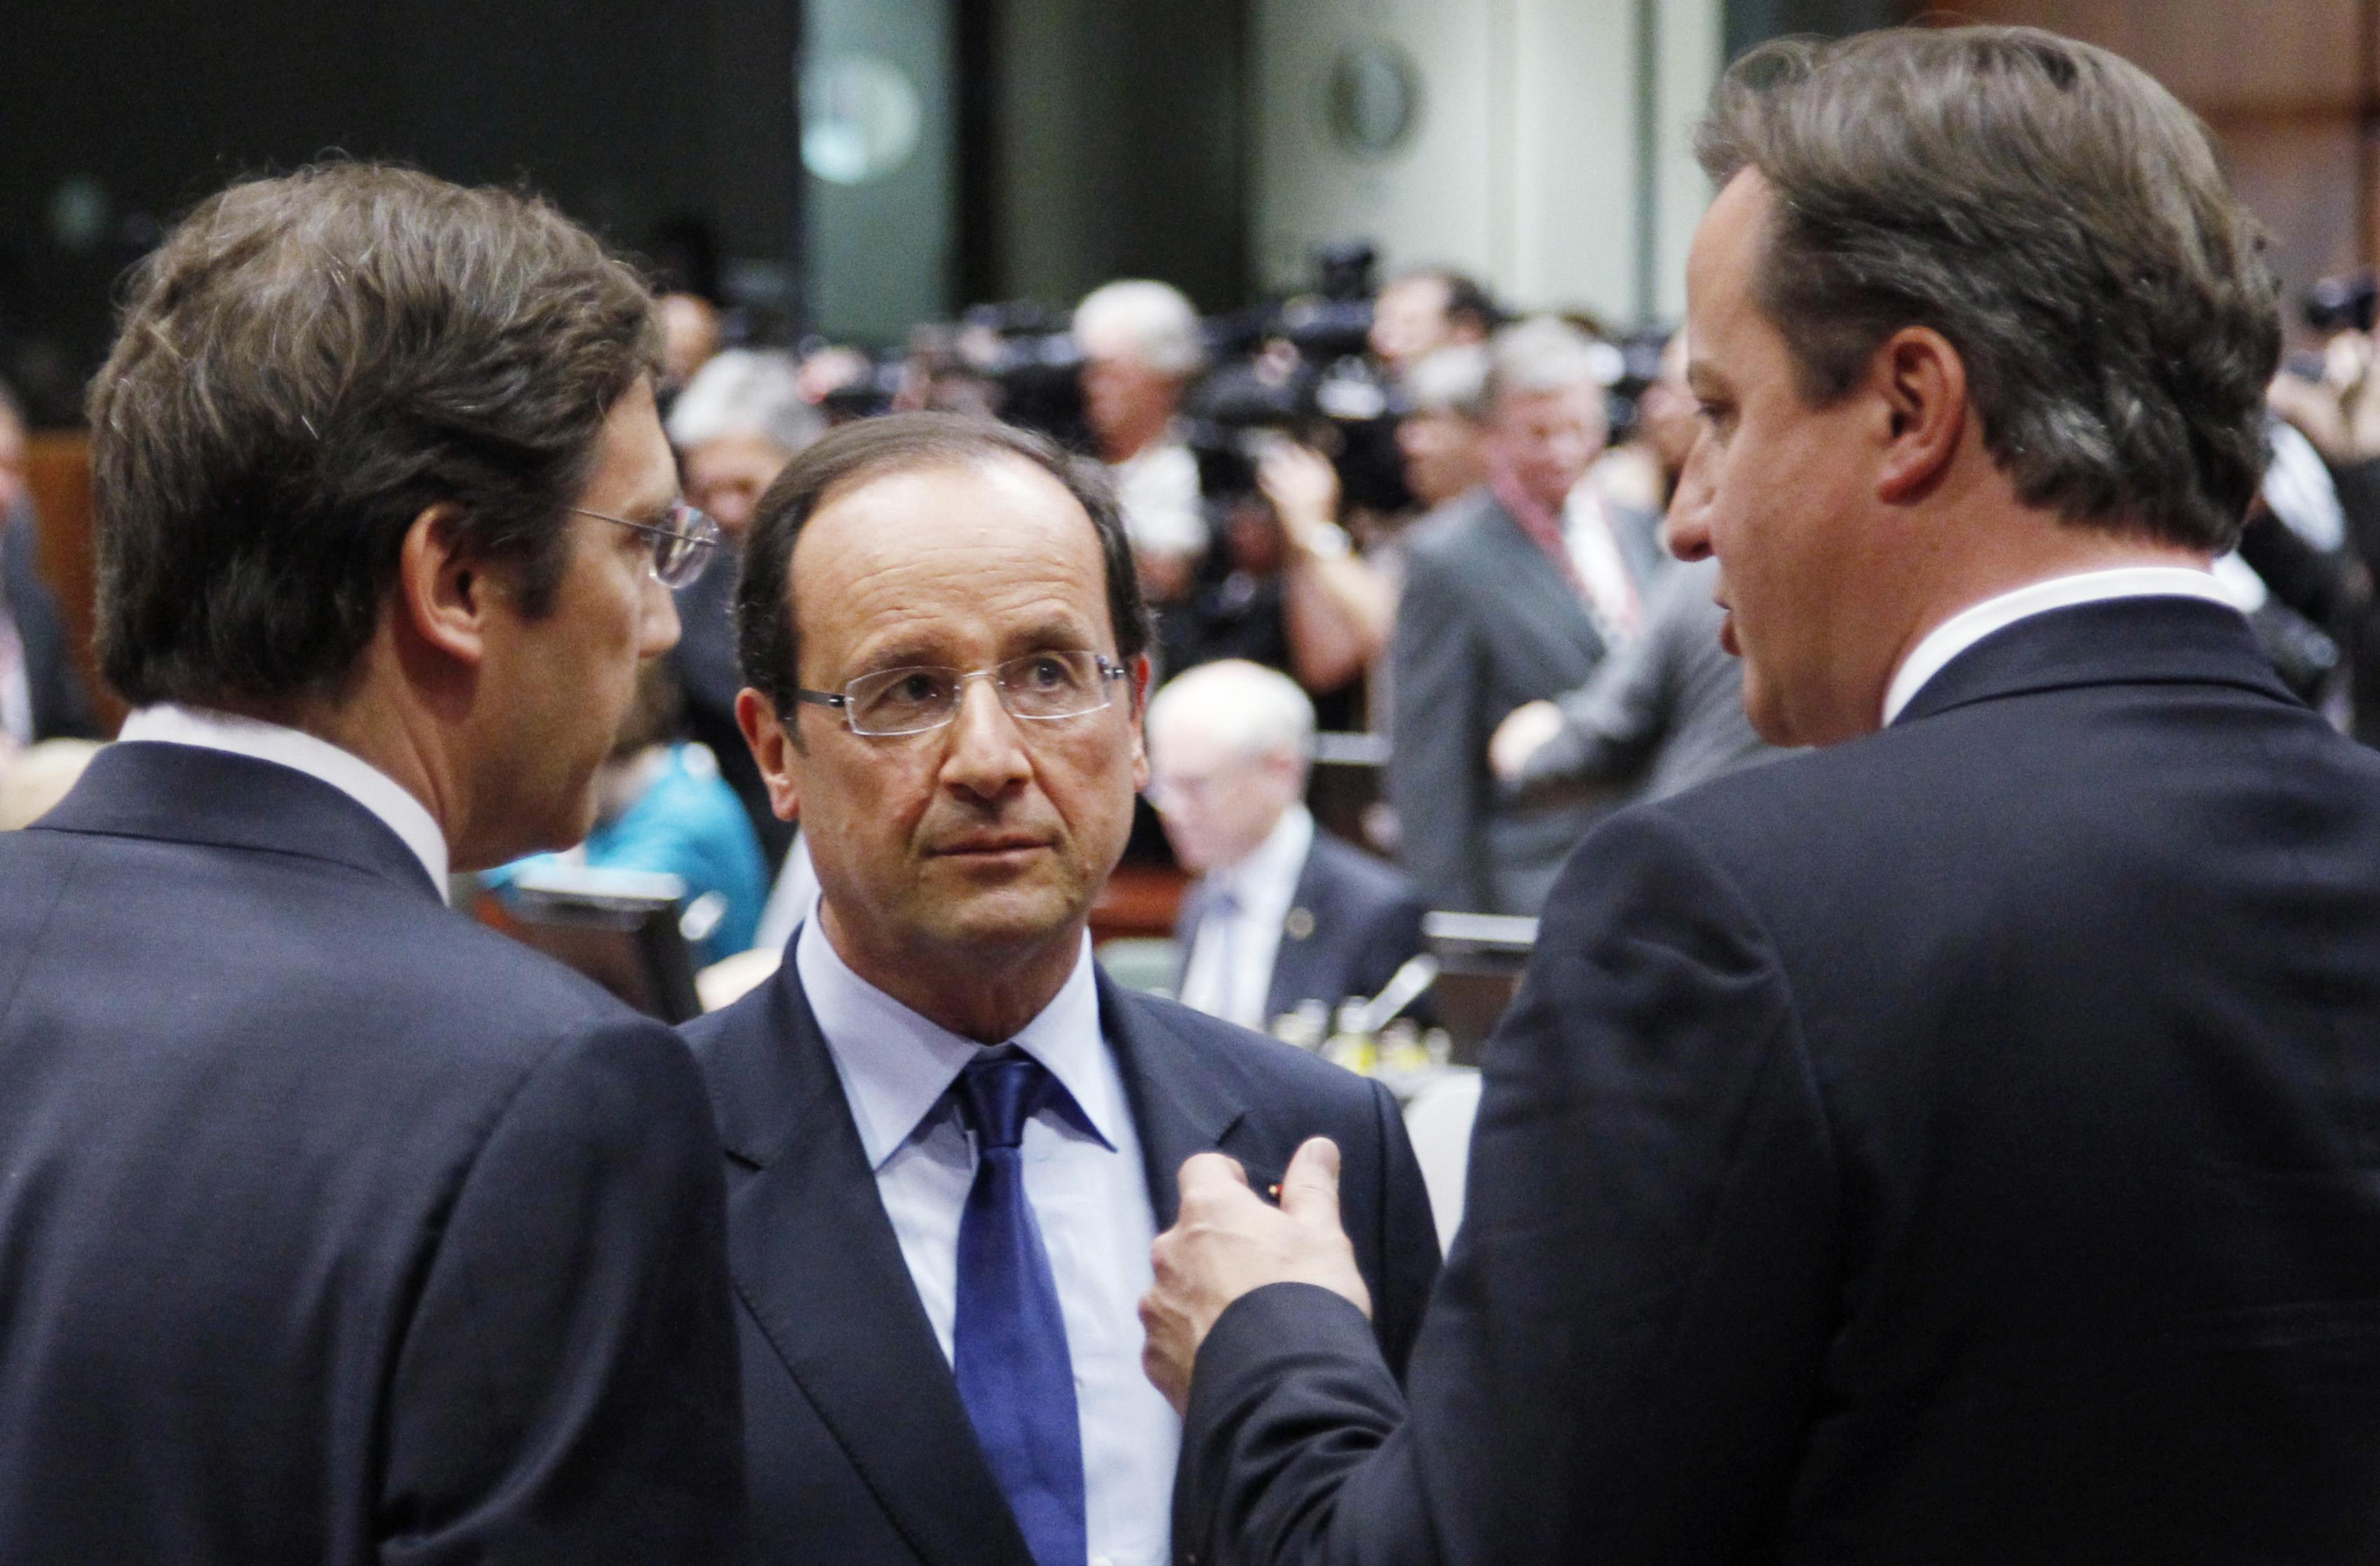 Το θέμα των σχέσεων Βρετανίας – ΕΕ θα θέσει ο Κάμερον στον Ολάντ